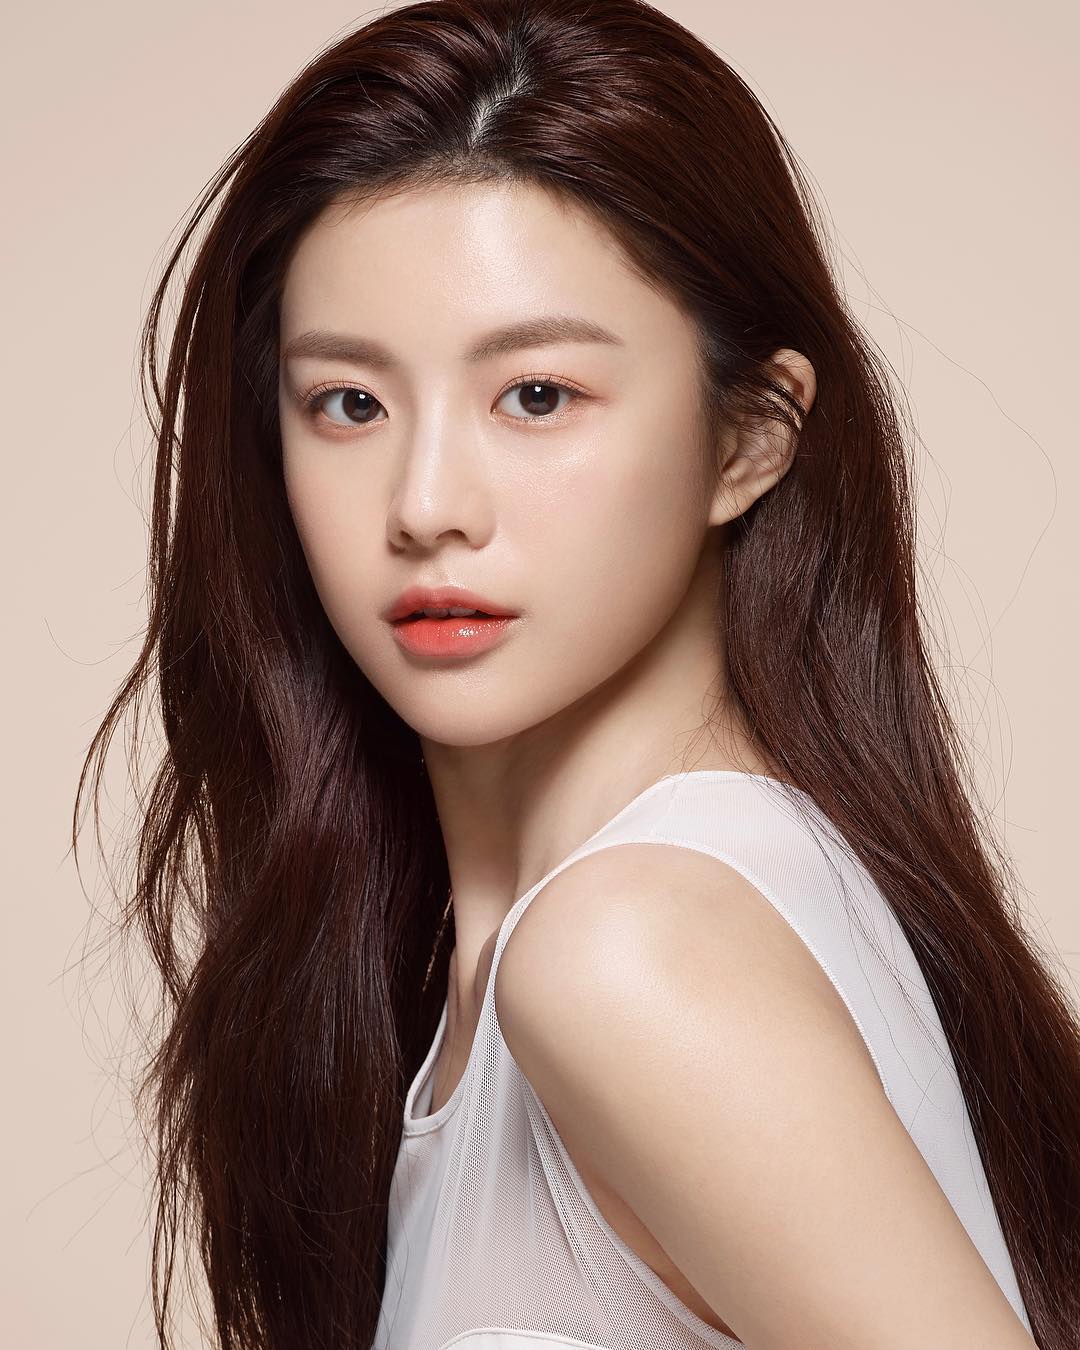 10 อันดับ นักแสดงหญิงเกาหลีใต้ที่สวยที่สุด จากผลโหวตบน Naver’s (네이버)